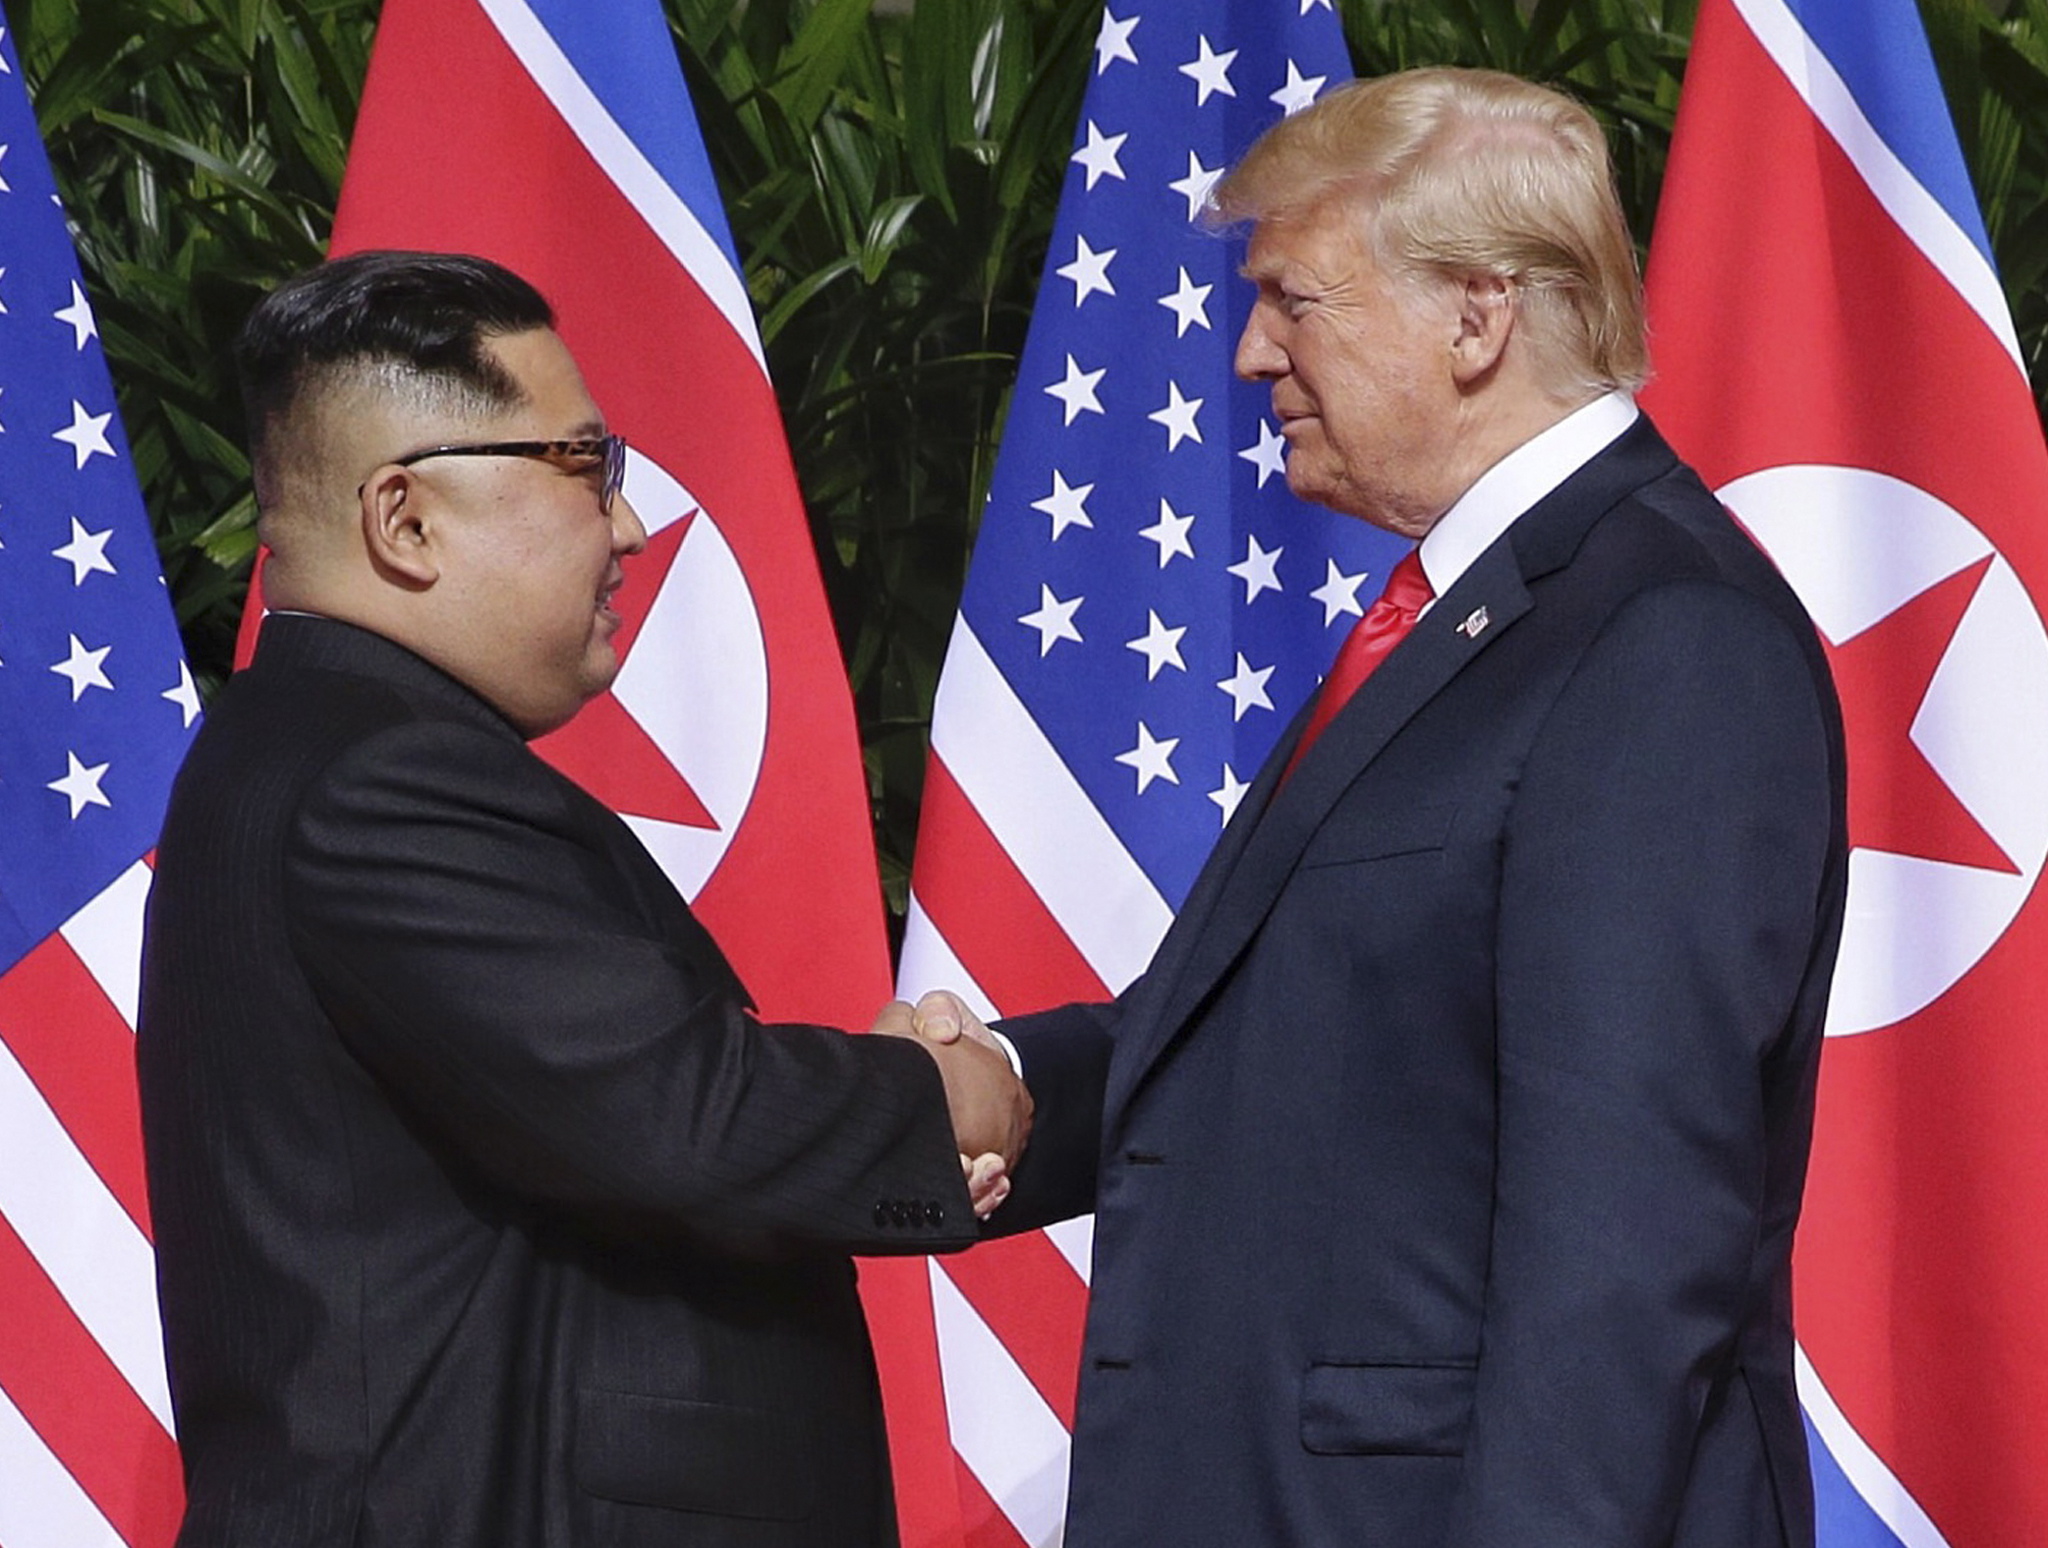 Историческо ръкостискане между американския президент Доналд Тръмп и севернокорейския лидер Ким Чен-ун се състоя днес в Сингапур. Това е първата среща между действащ американски президент и севернокорейски лидер.